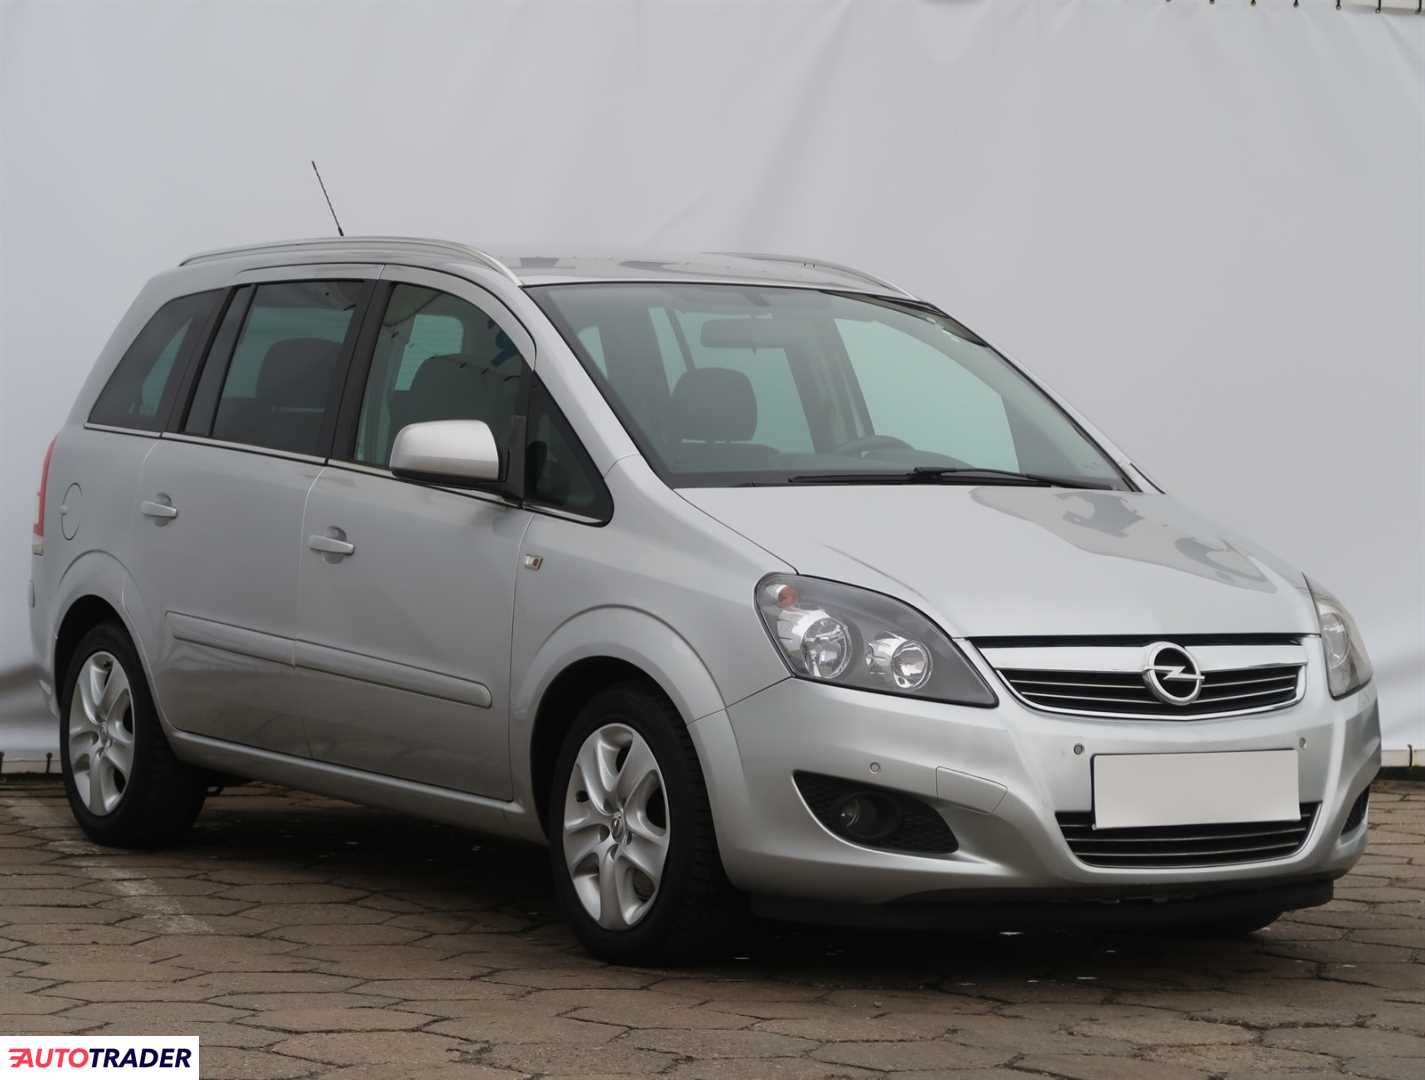 Opel Zafira 2014 1.7 123 KM